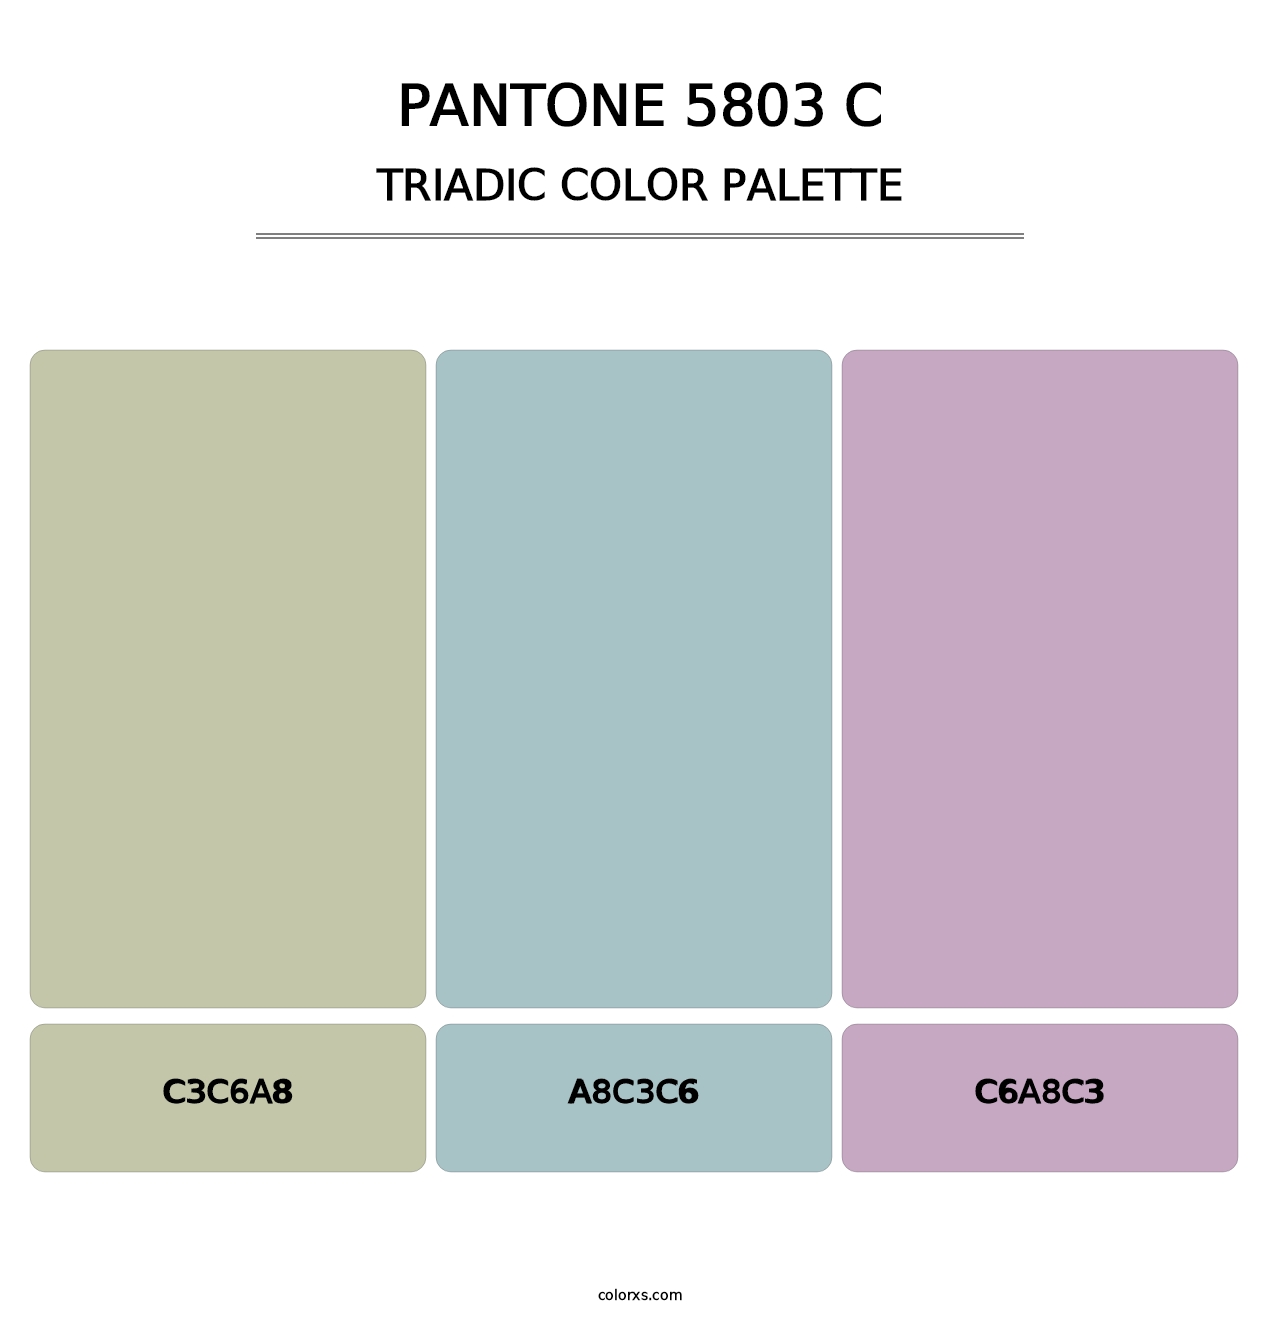 PANTONE 5803 C - Triadic Color Palette